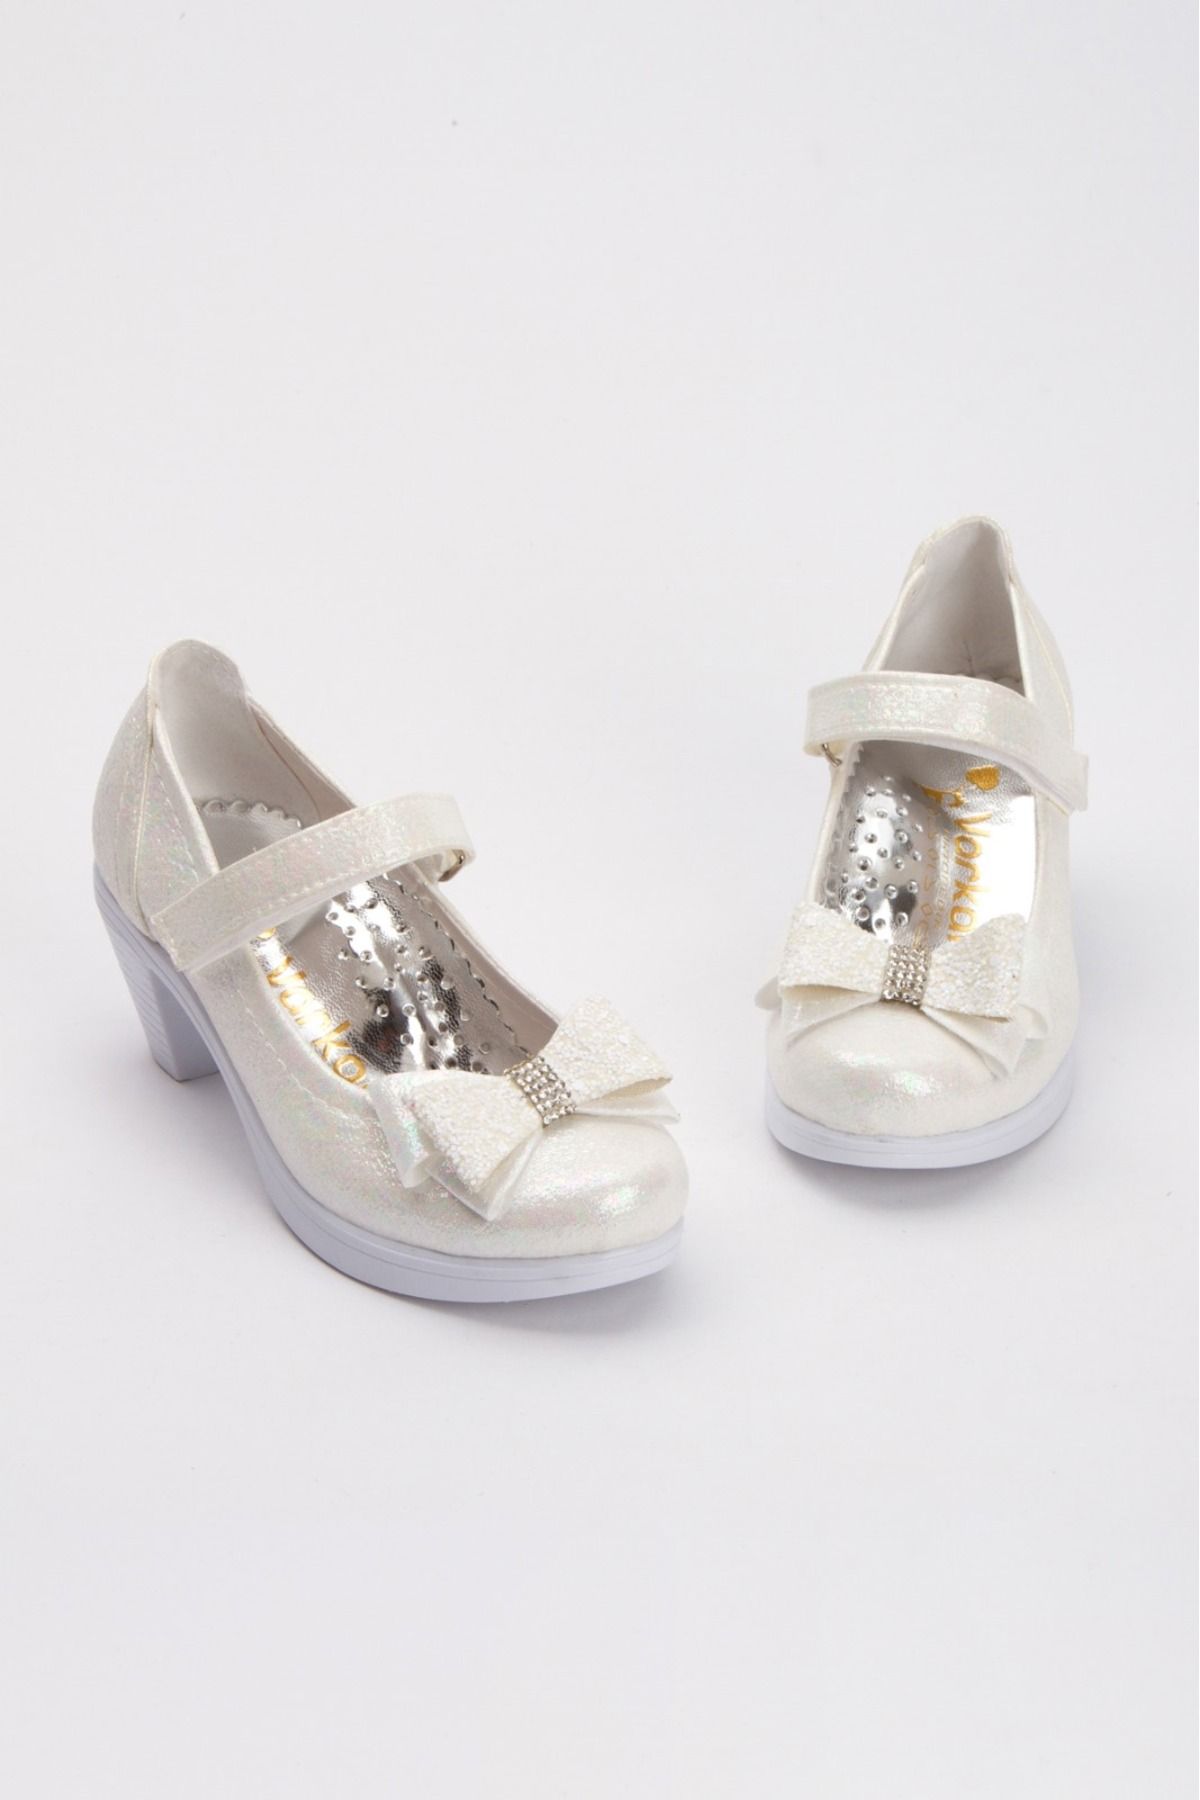 shopland Krem Işıltılı Kız Çocuk Ortopedik Topuklu Prenses Ayakkabısı